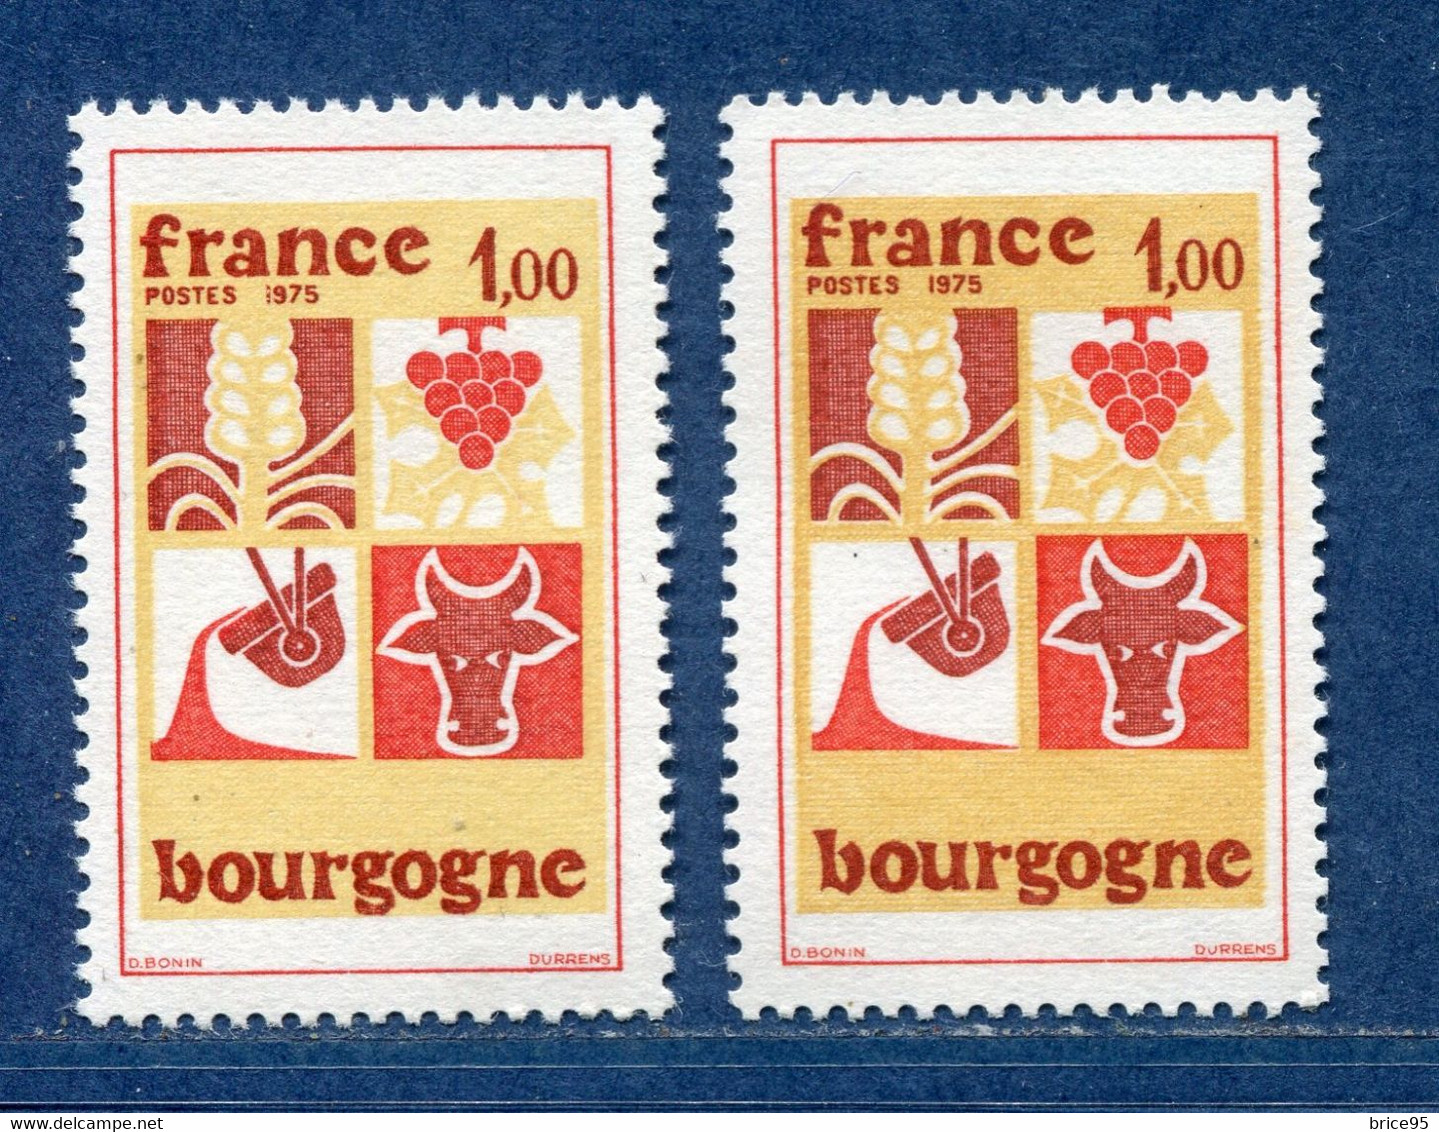 ⭐ France - Variété - YT N° 1848 - Couleurs - Pétouille - Neuf Sans Charnière - 1975 ⭐ - Nuevos